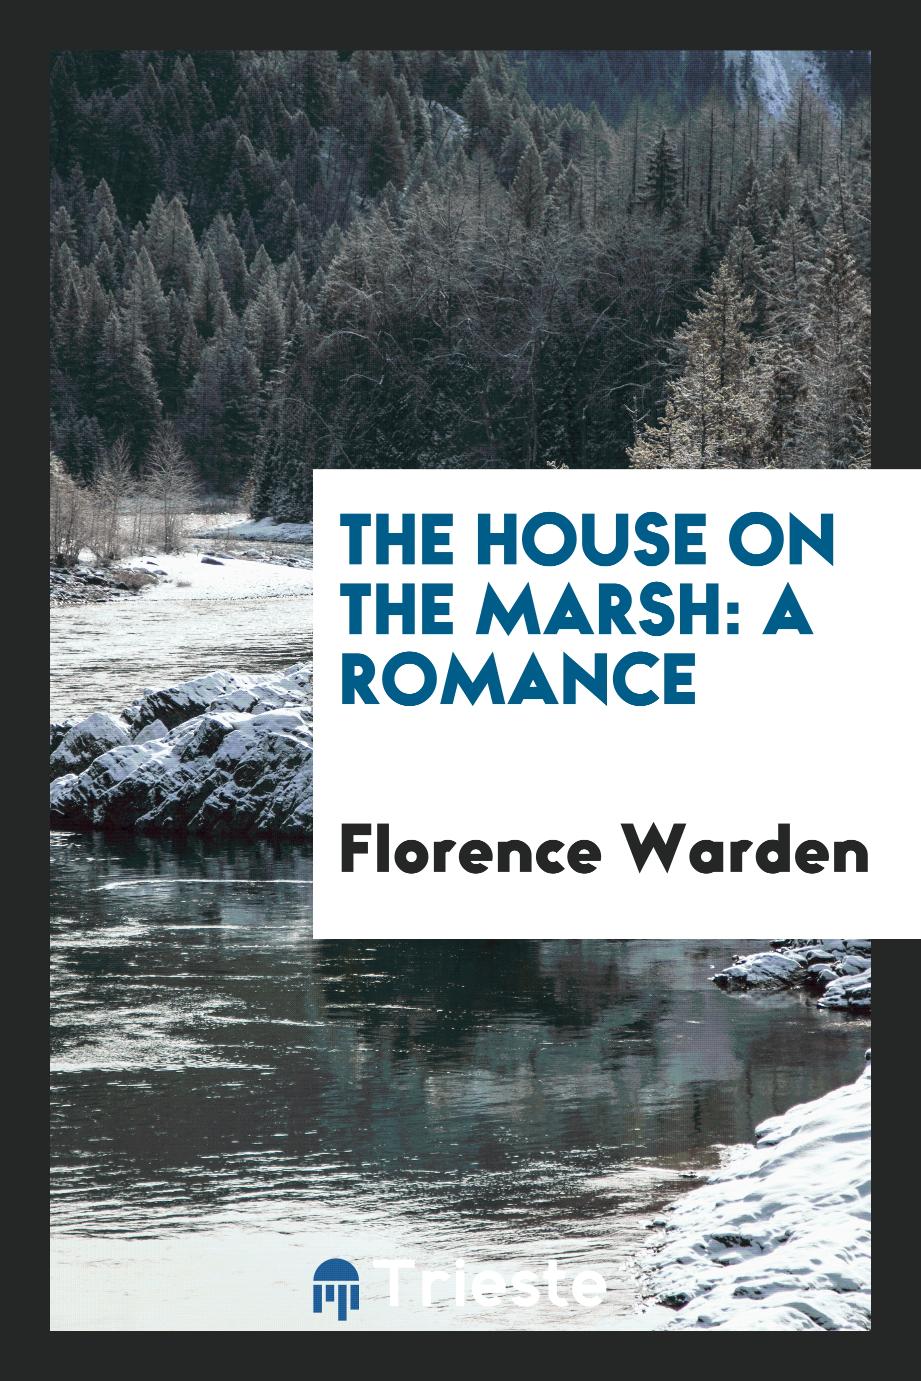 The House on the Marsh: A Romance